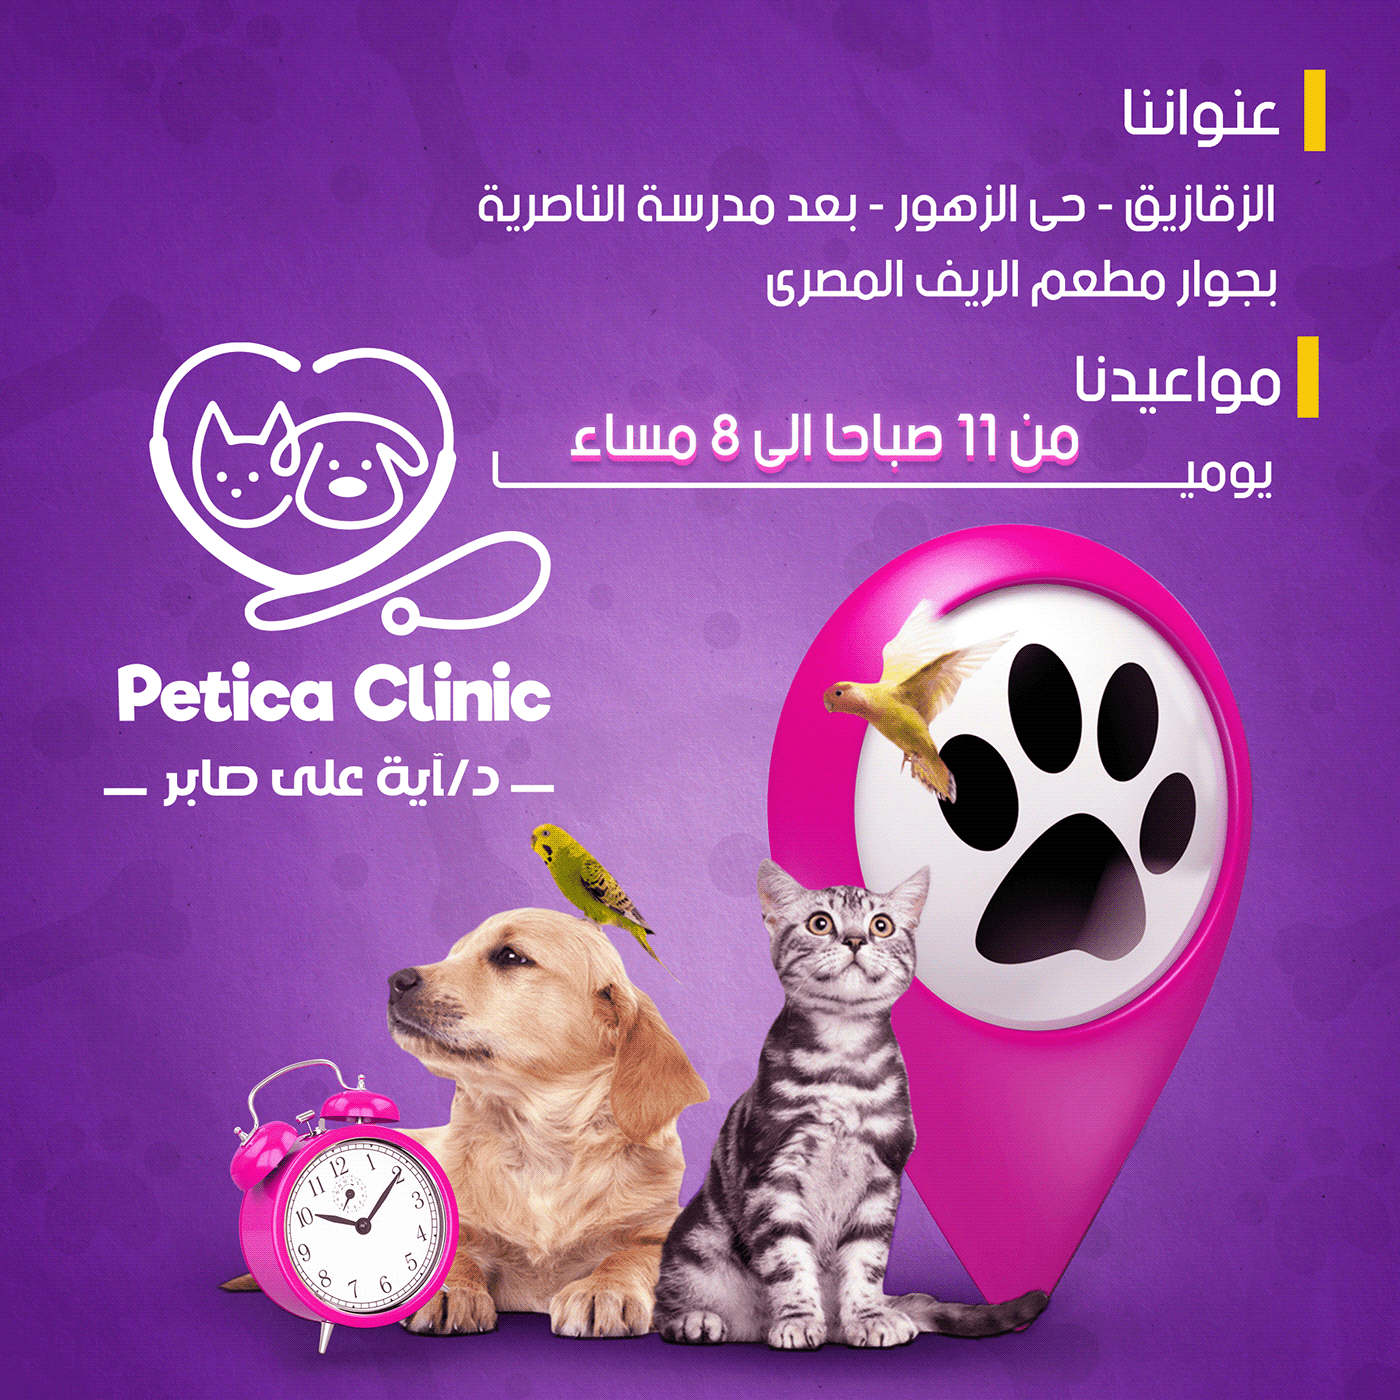 Advertising  Cat clinic clinica Pet pets petshop Social media post Socialmedia